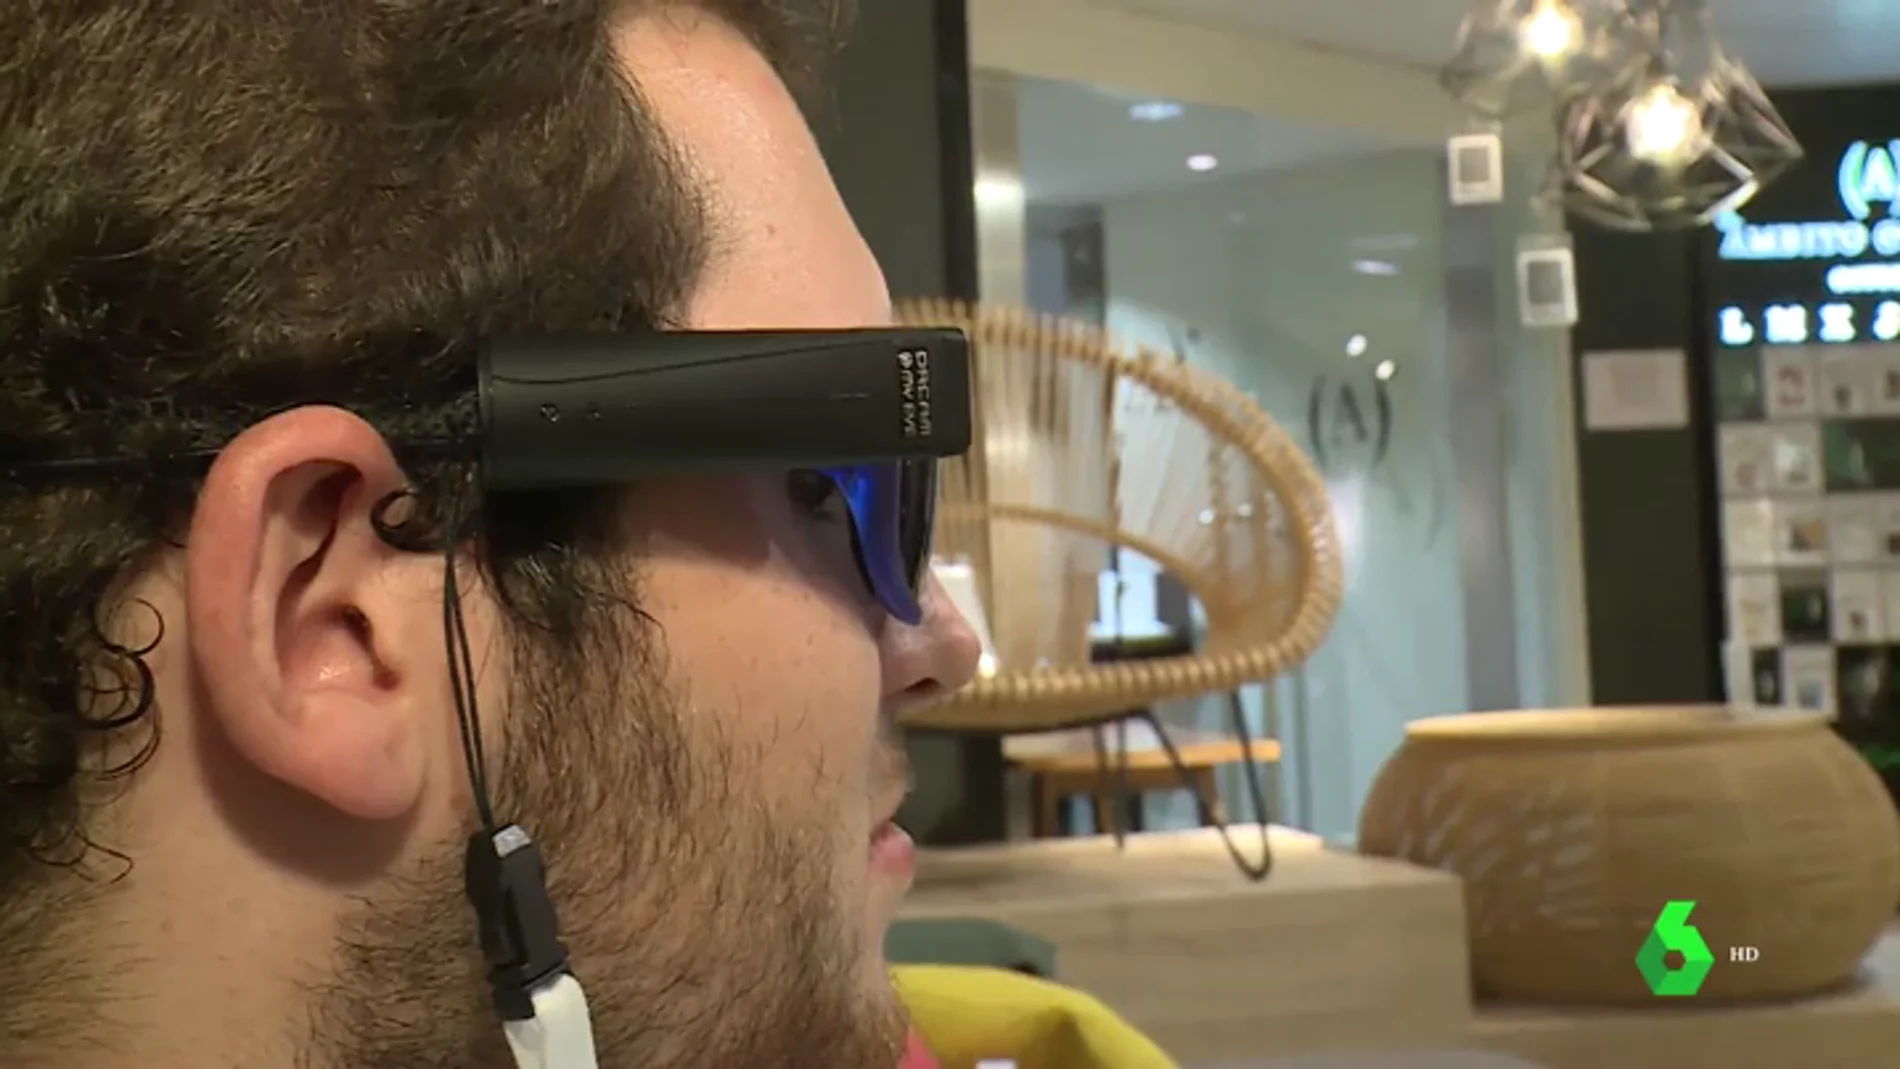 Crean unas con cámara para facilitar el día a día de los ciegos: permiten e identifican personas y productos